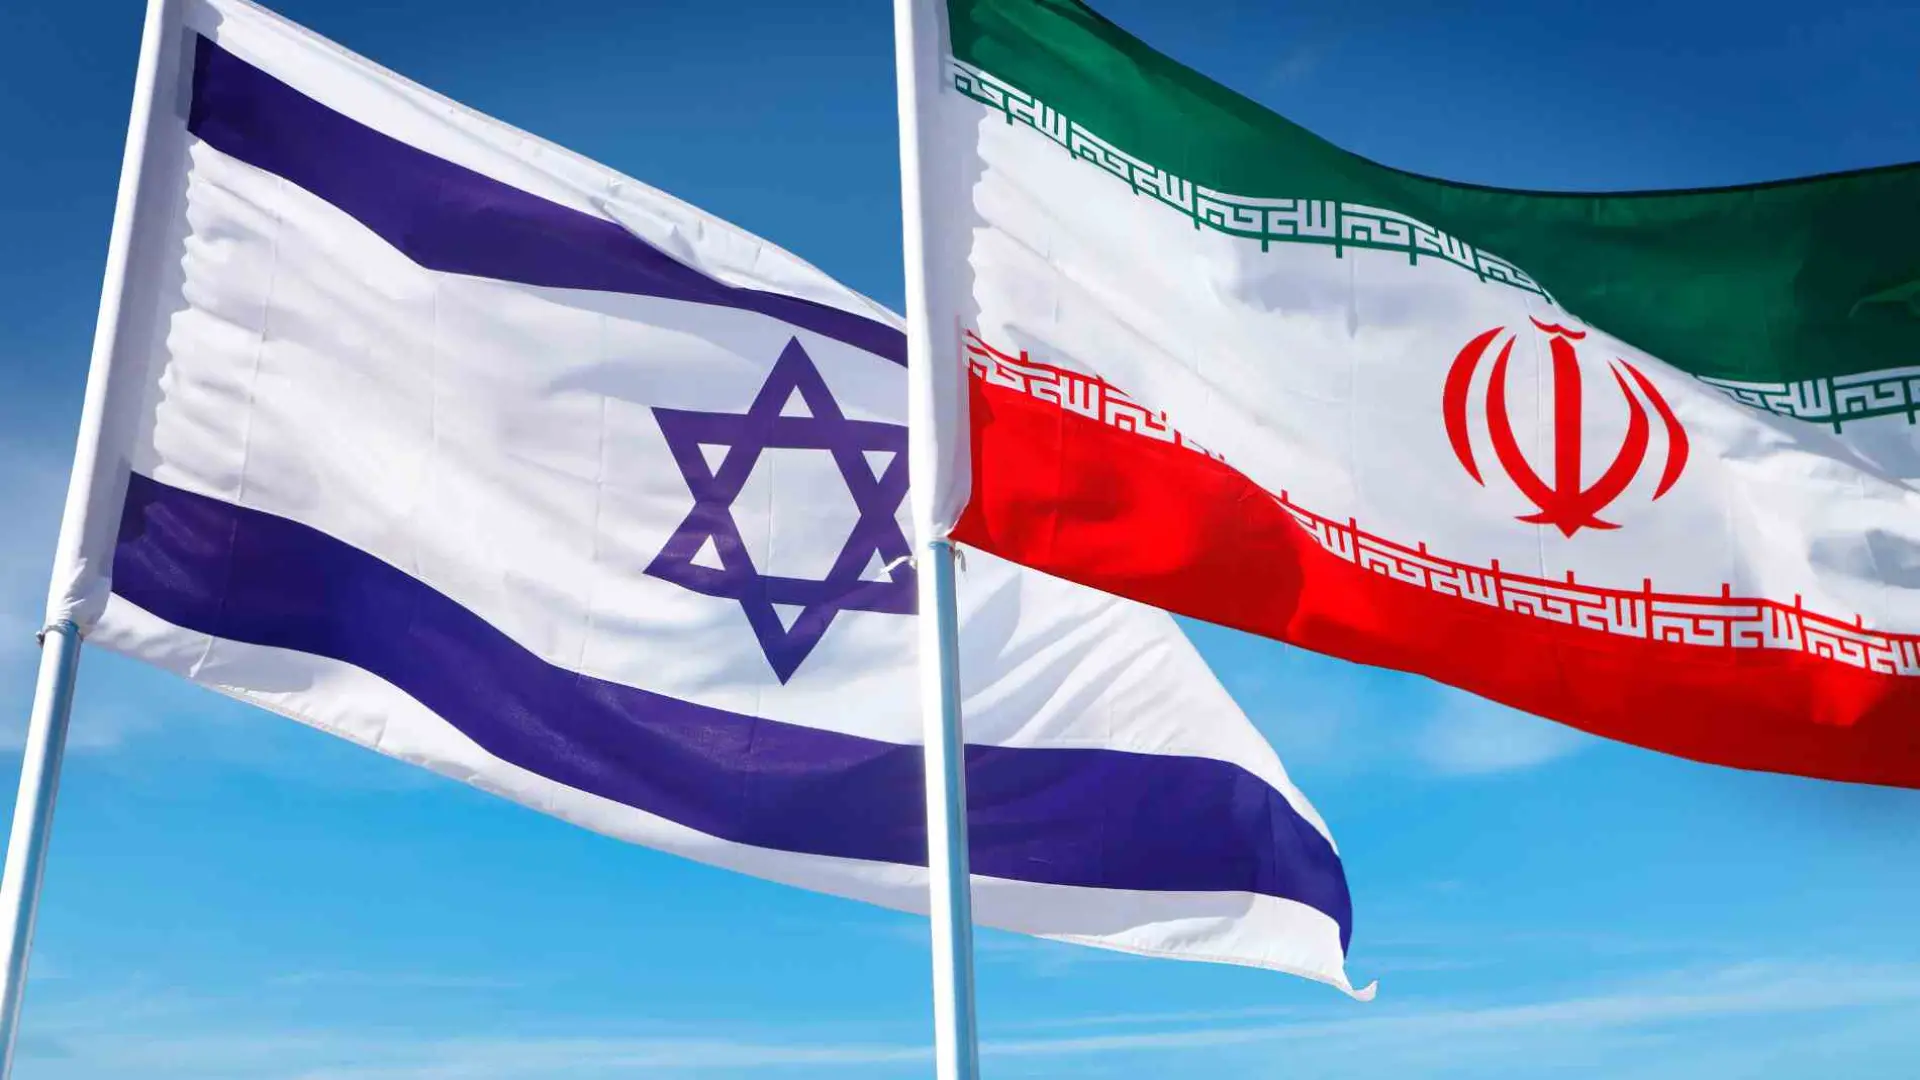 Economista habla sobre consecuencias mundiales a causa de los enfrentamientos de Israel e Irán